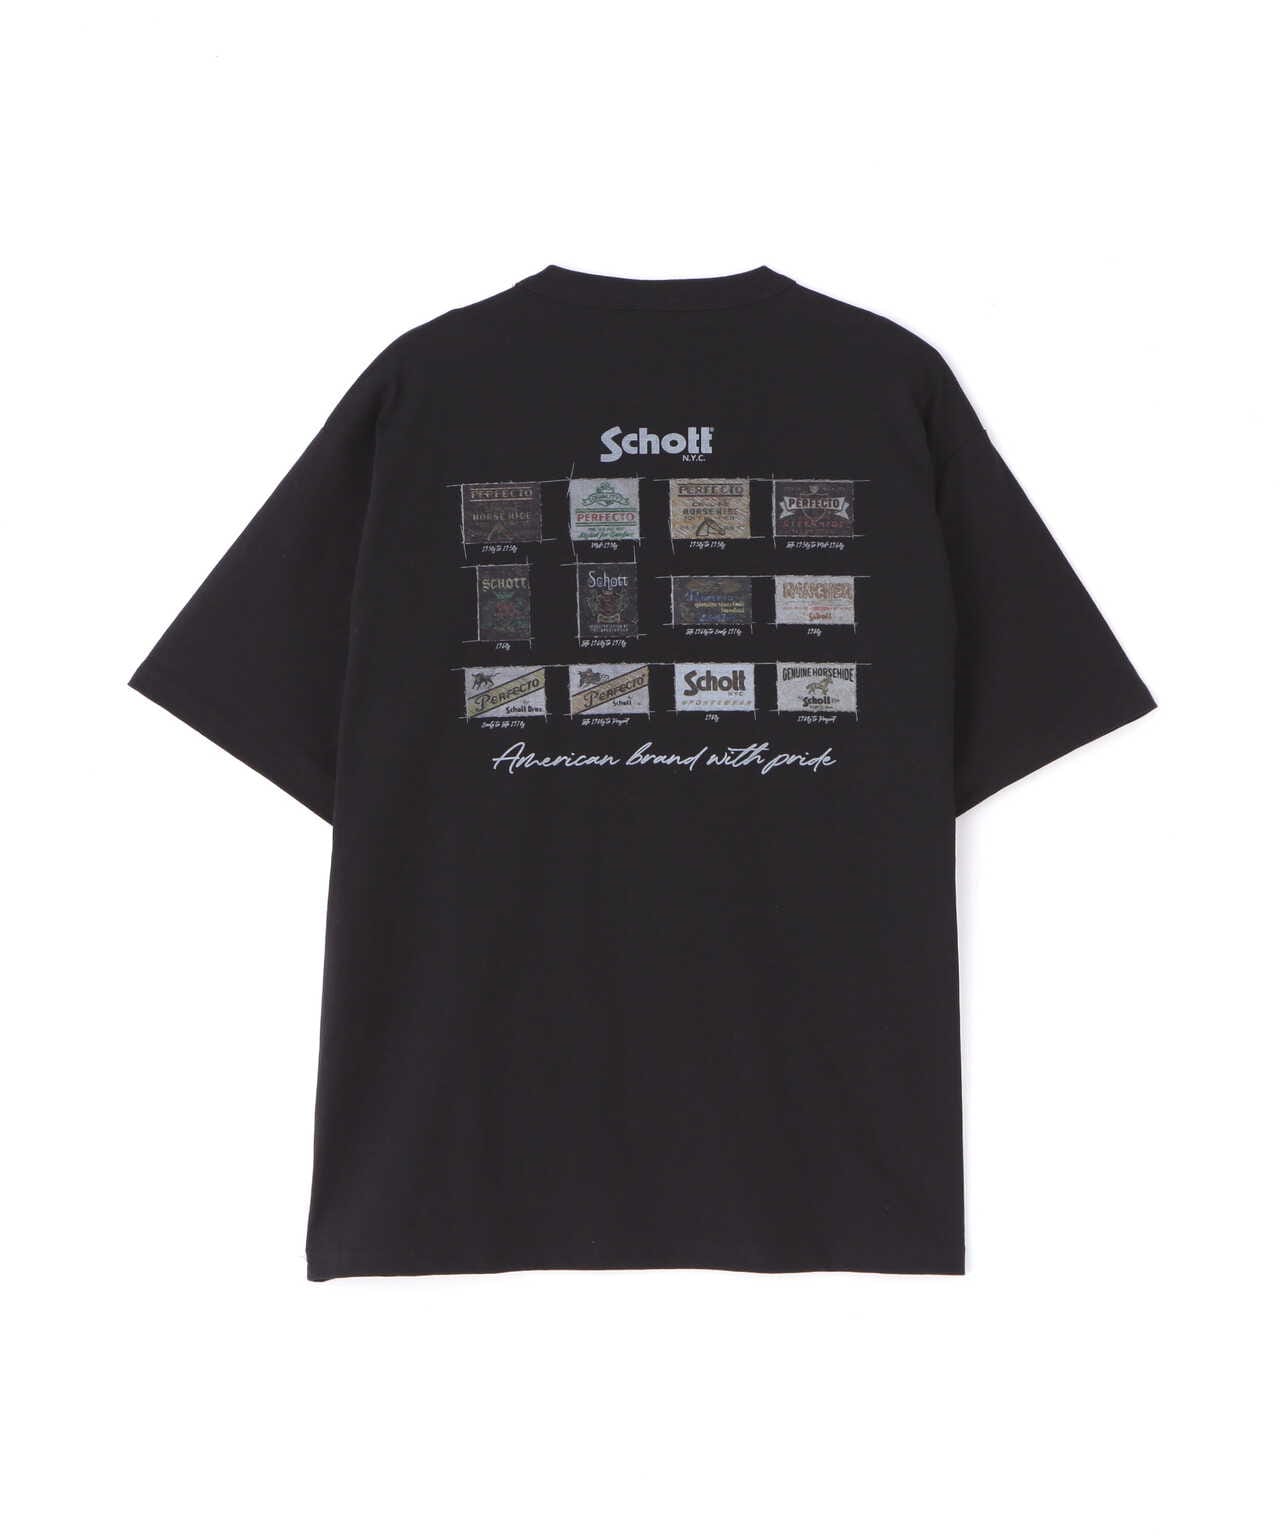 12,495円Frank Schott 90' ヴィンテージ フォト Tシャツ USA